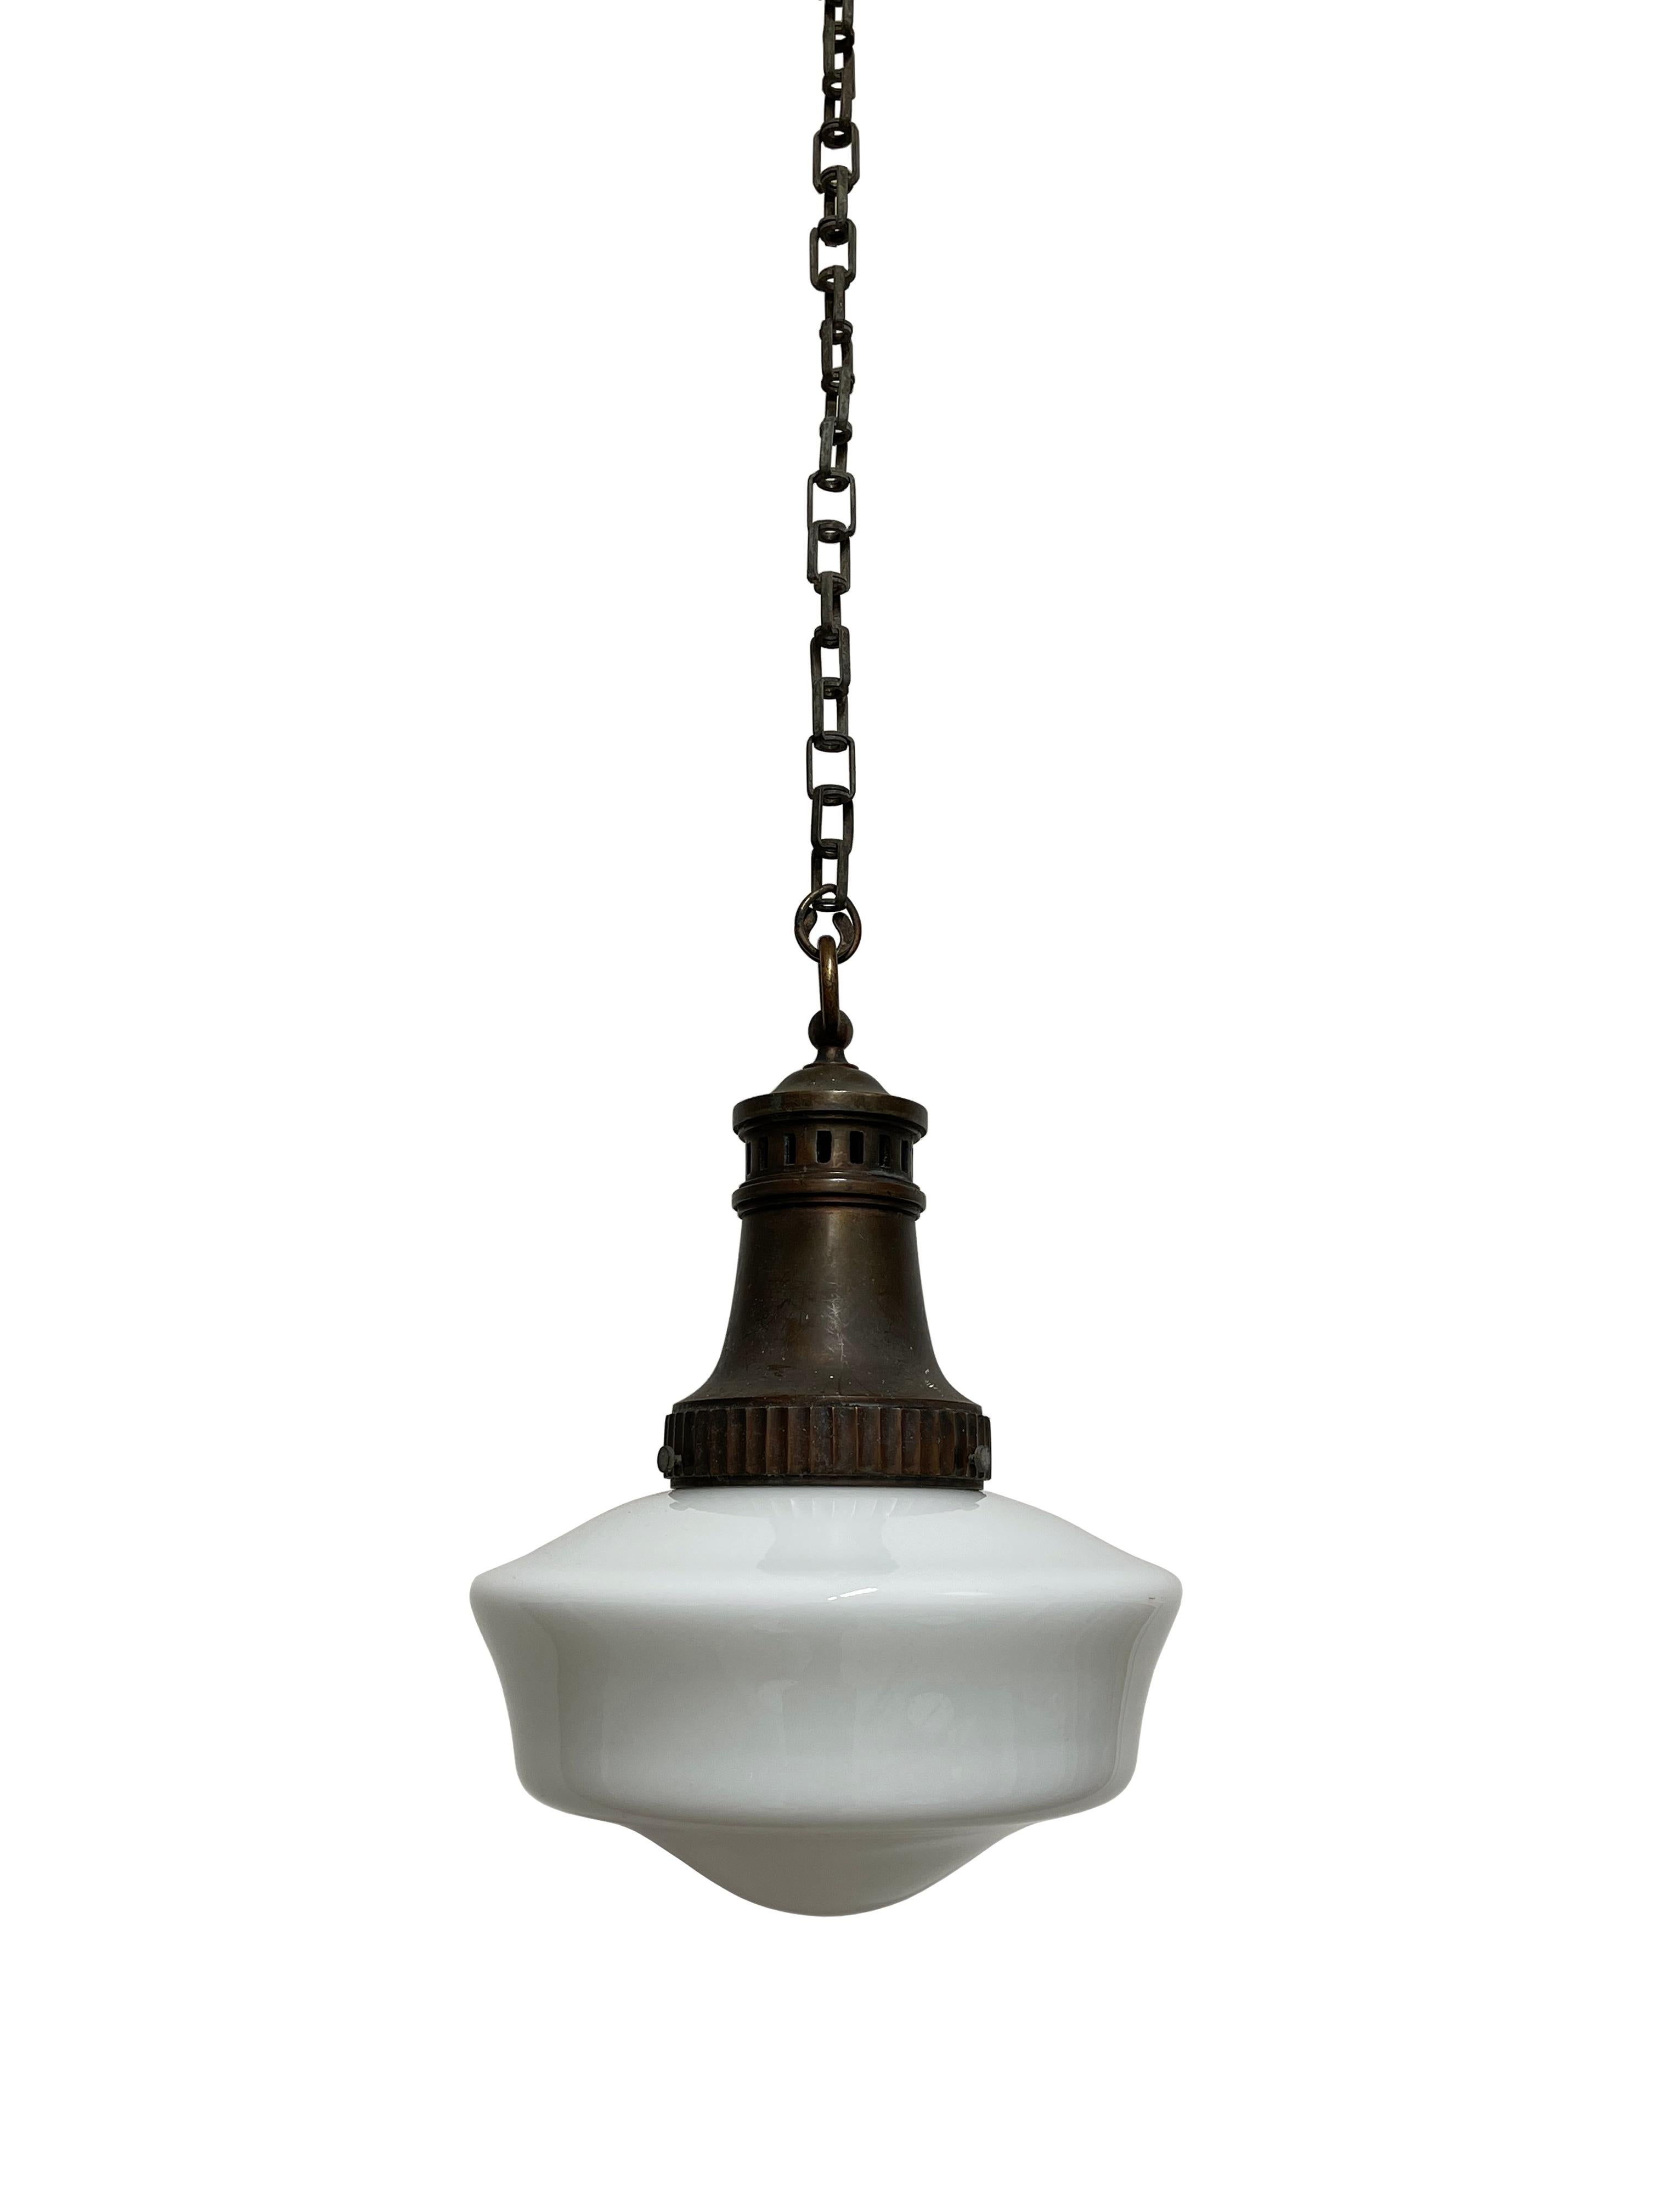 British Large Antique Vintage Cast Iron Opaline Milk Glass Ceiling Pendant Light Lamp